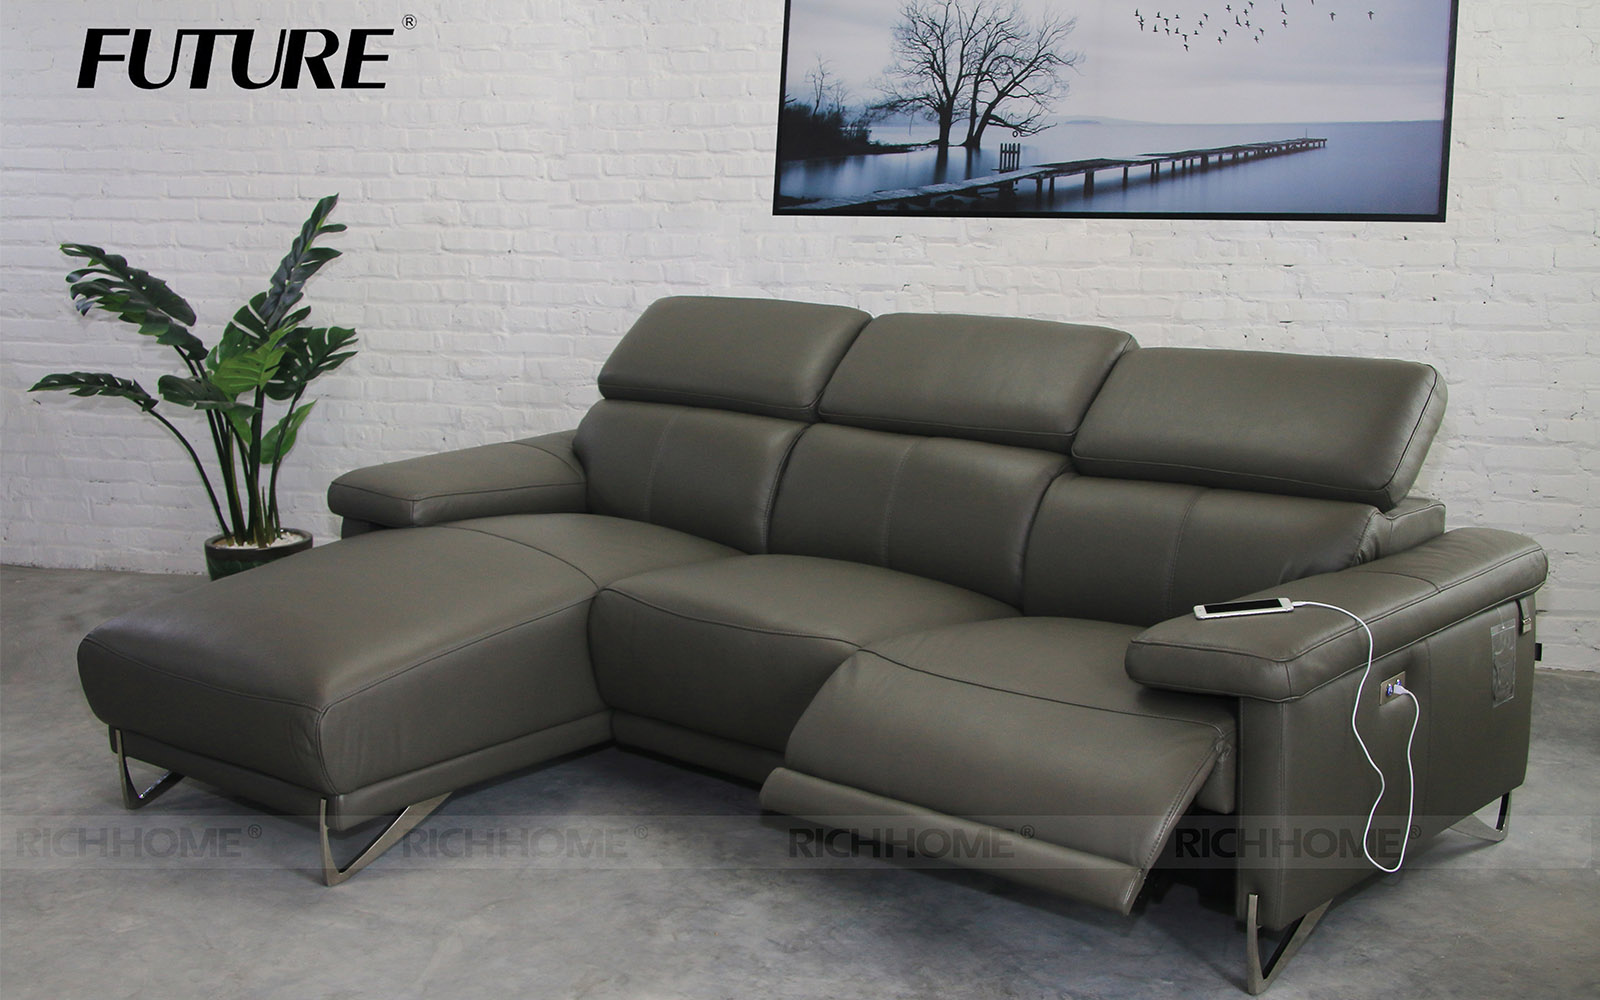 Những kiểu dáng ghế sofa cho chung cư theo xu hướng mới nhất - Ảnh 4